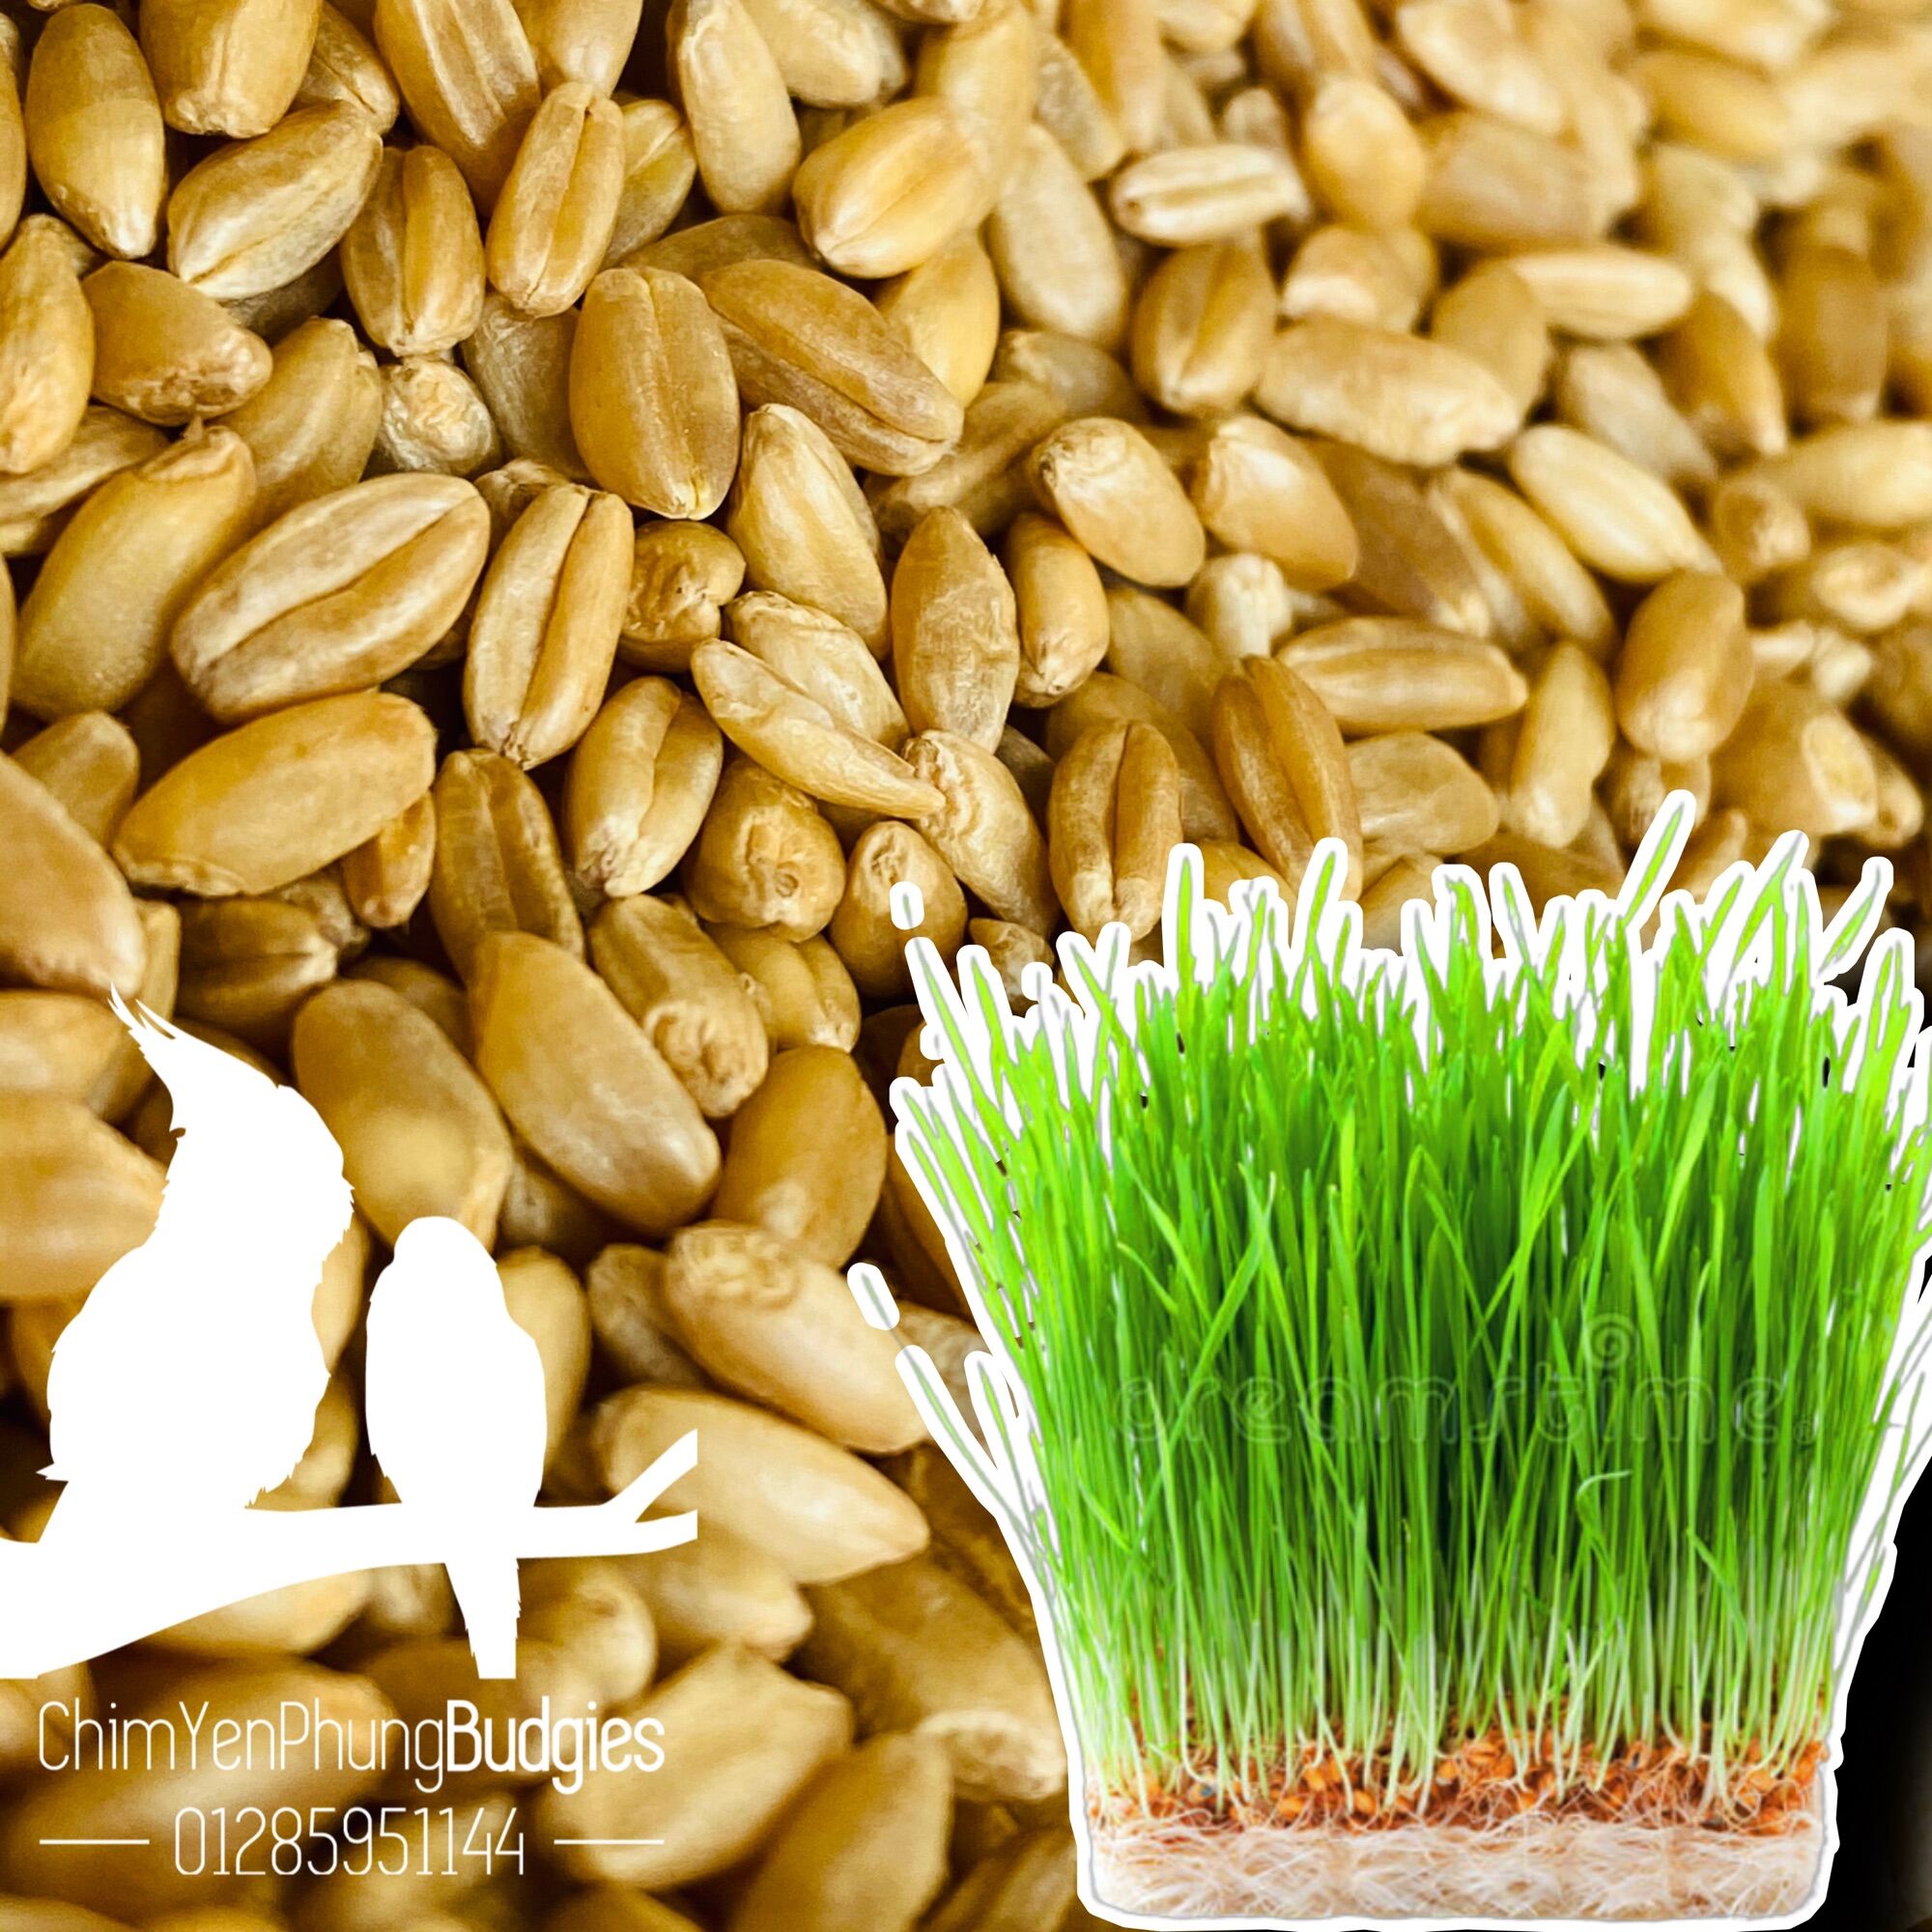 1kg hạt giống cỏ lúa mì • wheatgrass • cỏ mèo, ép lấy nước uống (hạt đẹp).